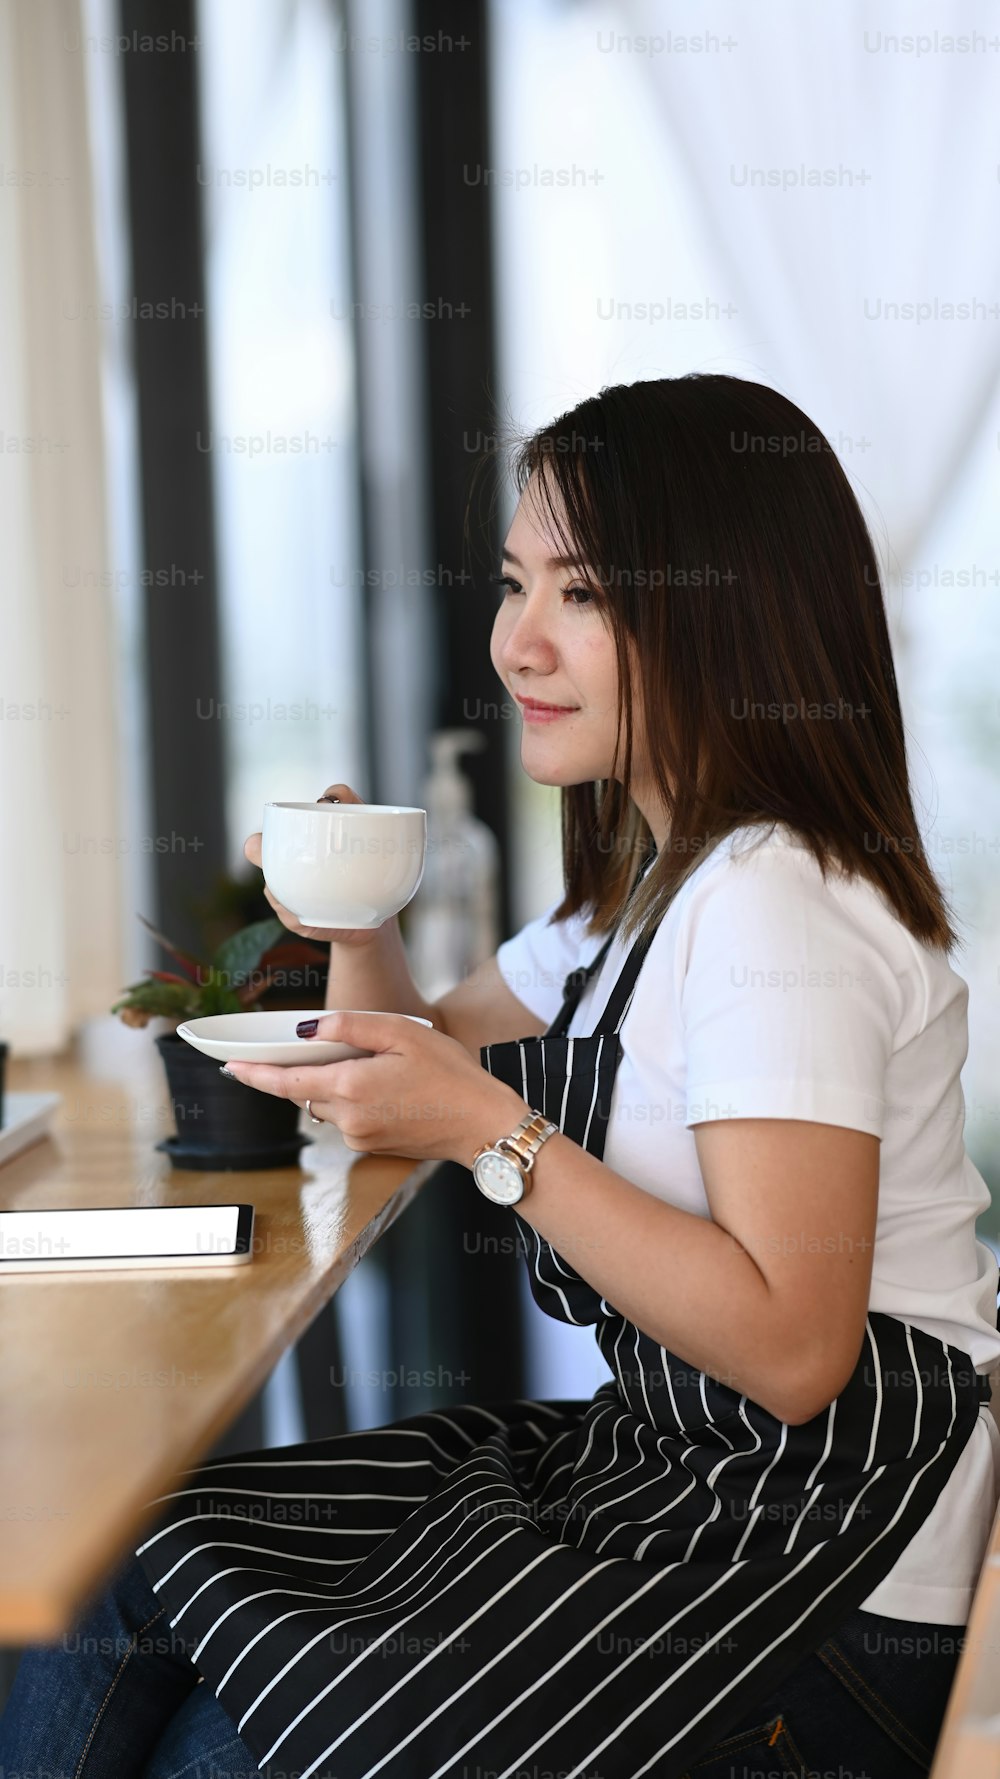 Retrato da dona de uma cafeteria segurando uma xícara de café quente e testando sozinha.